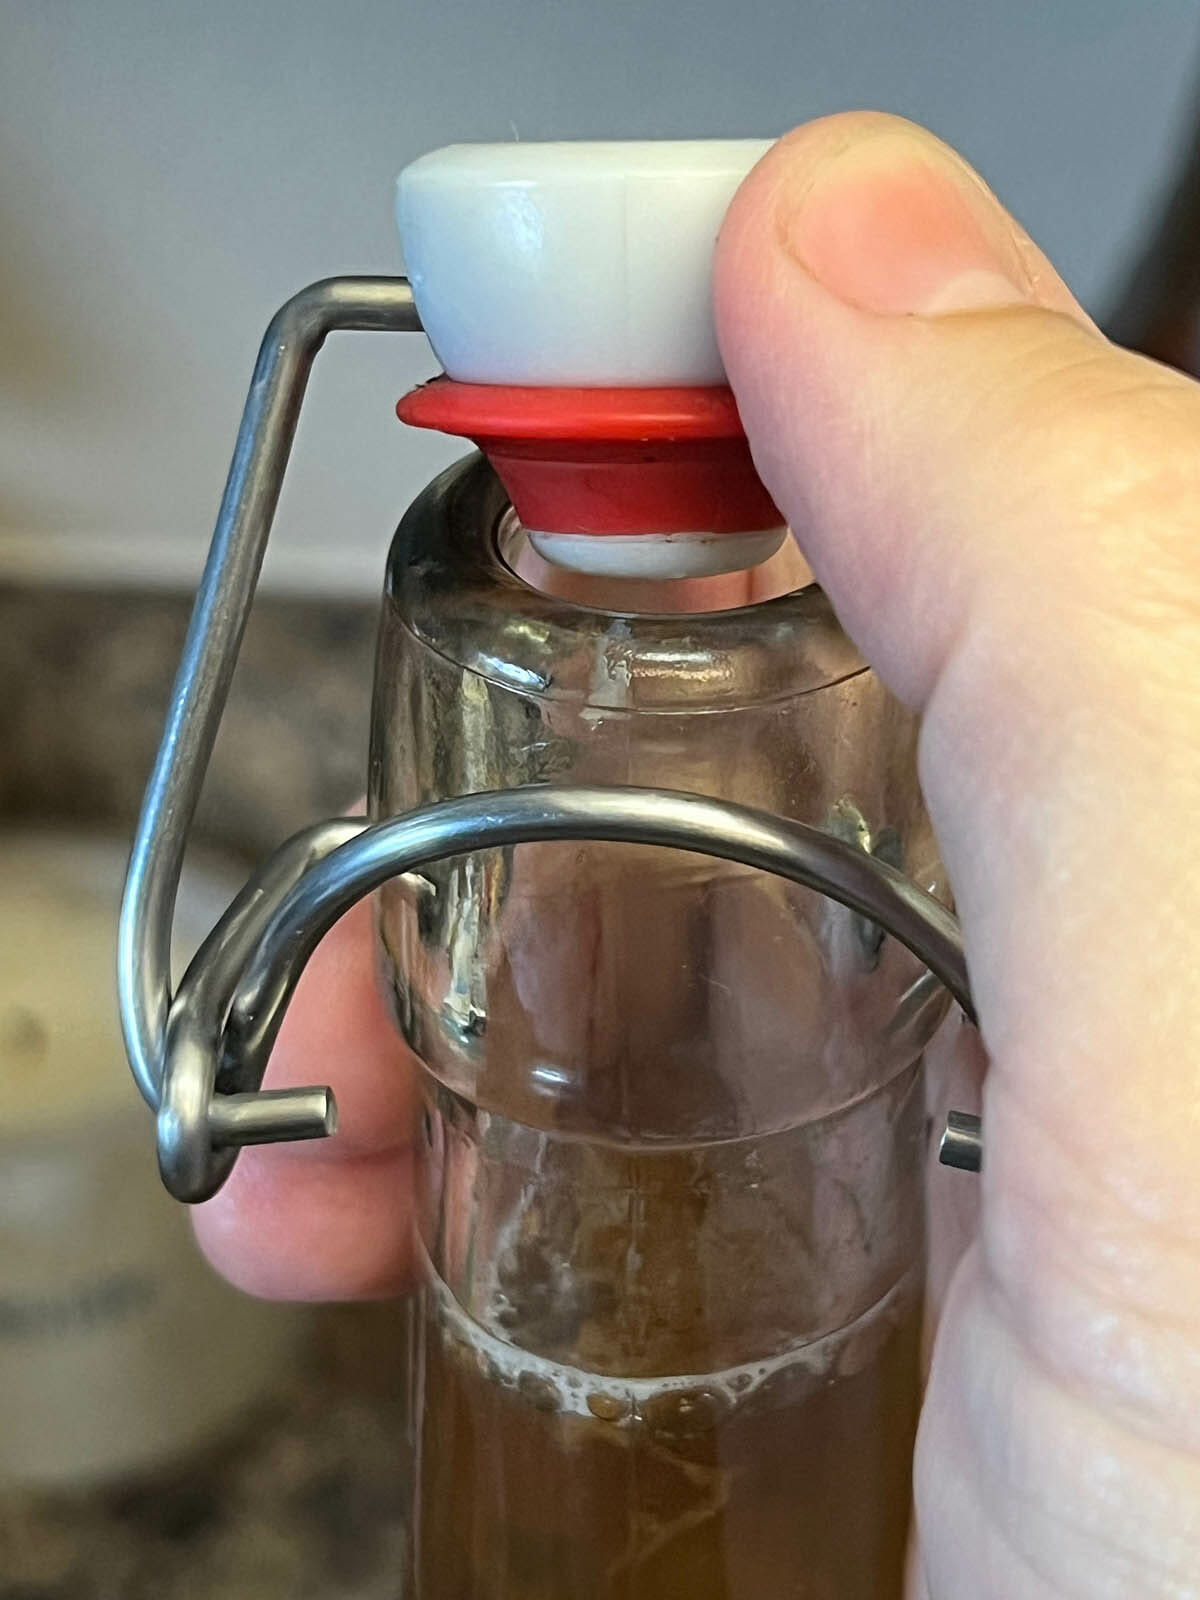 Flip-top bottle being popped open.